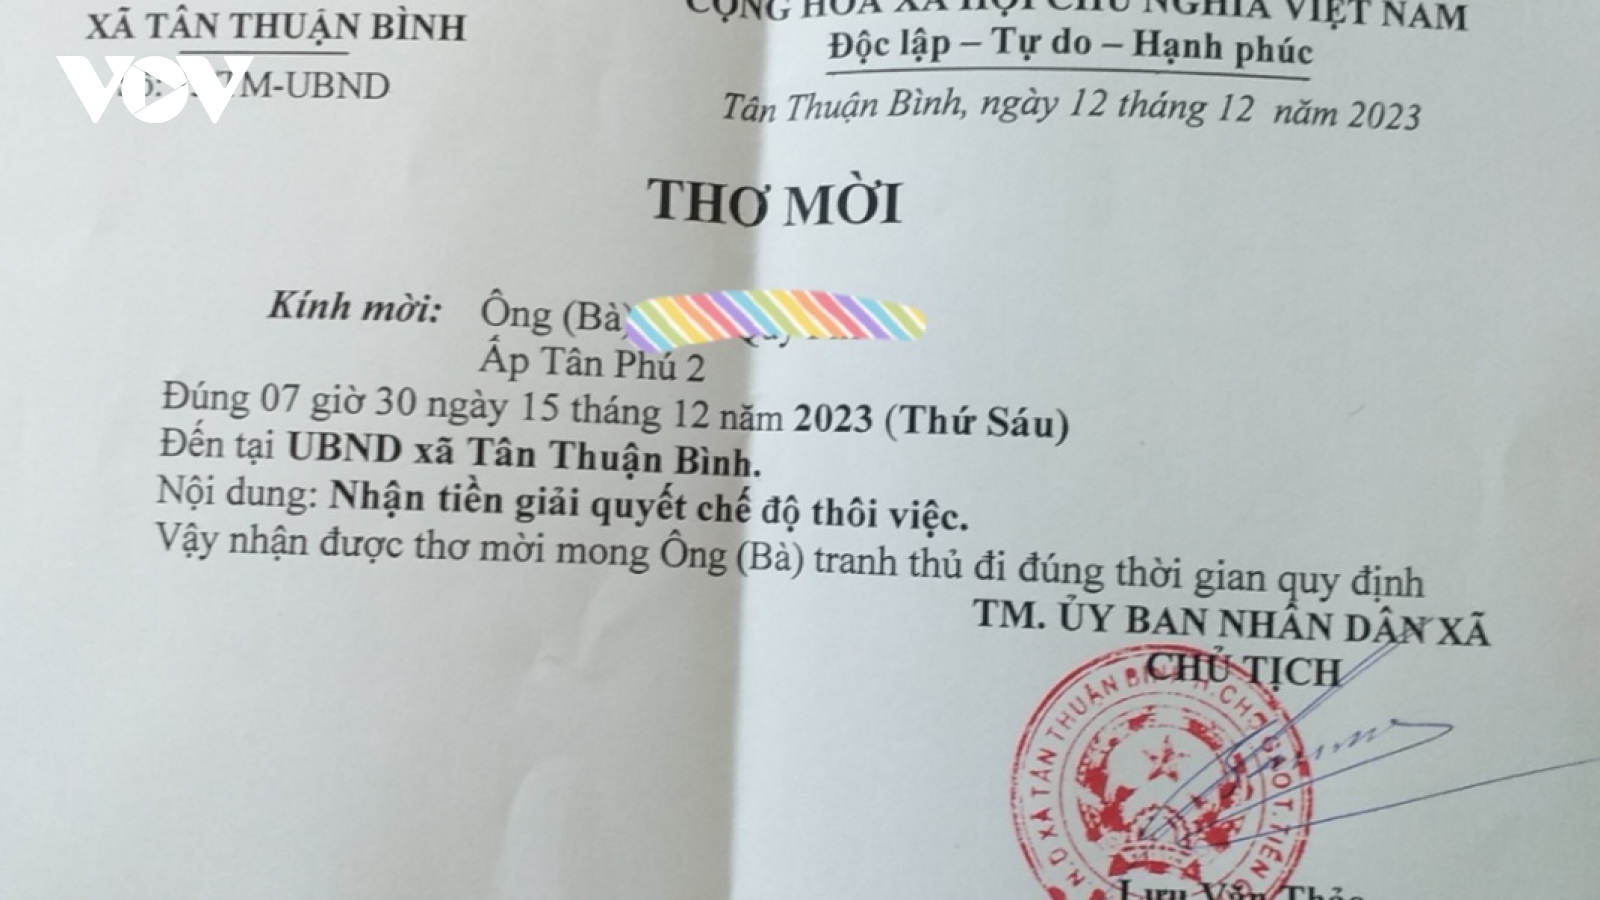 Cán bộ bán chuyên trách ở Tiền Giang được nhận tiền trợ cấp sau phản ánh của VOV